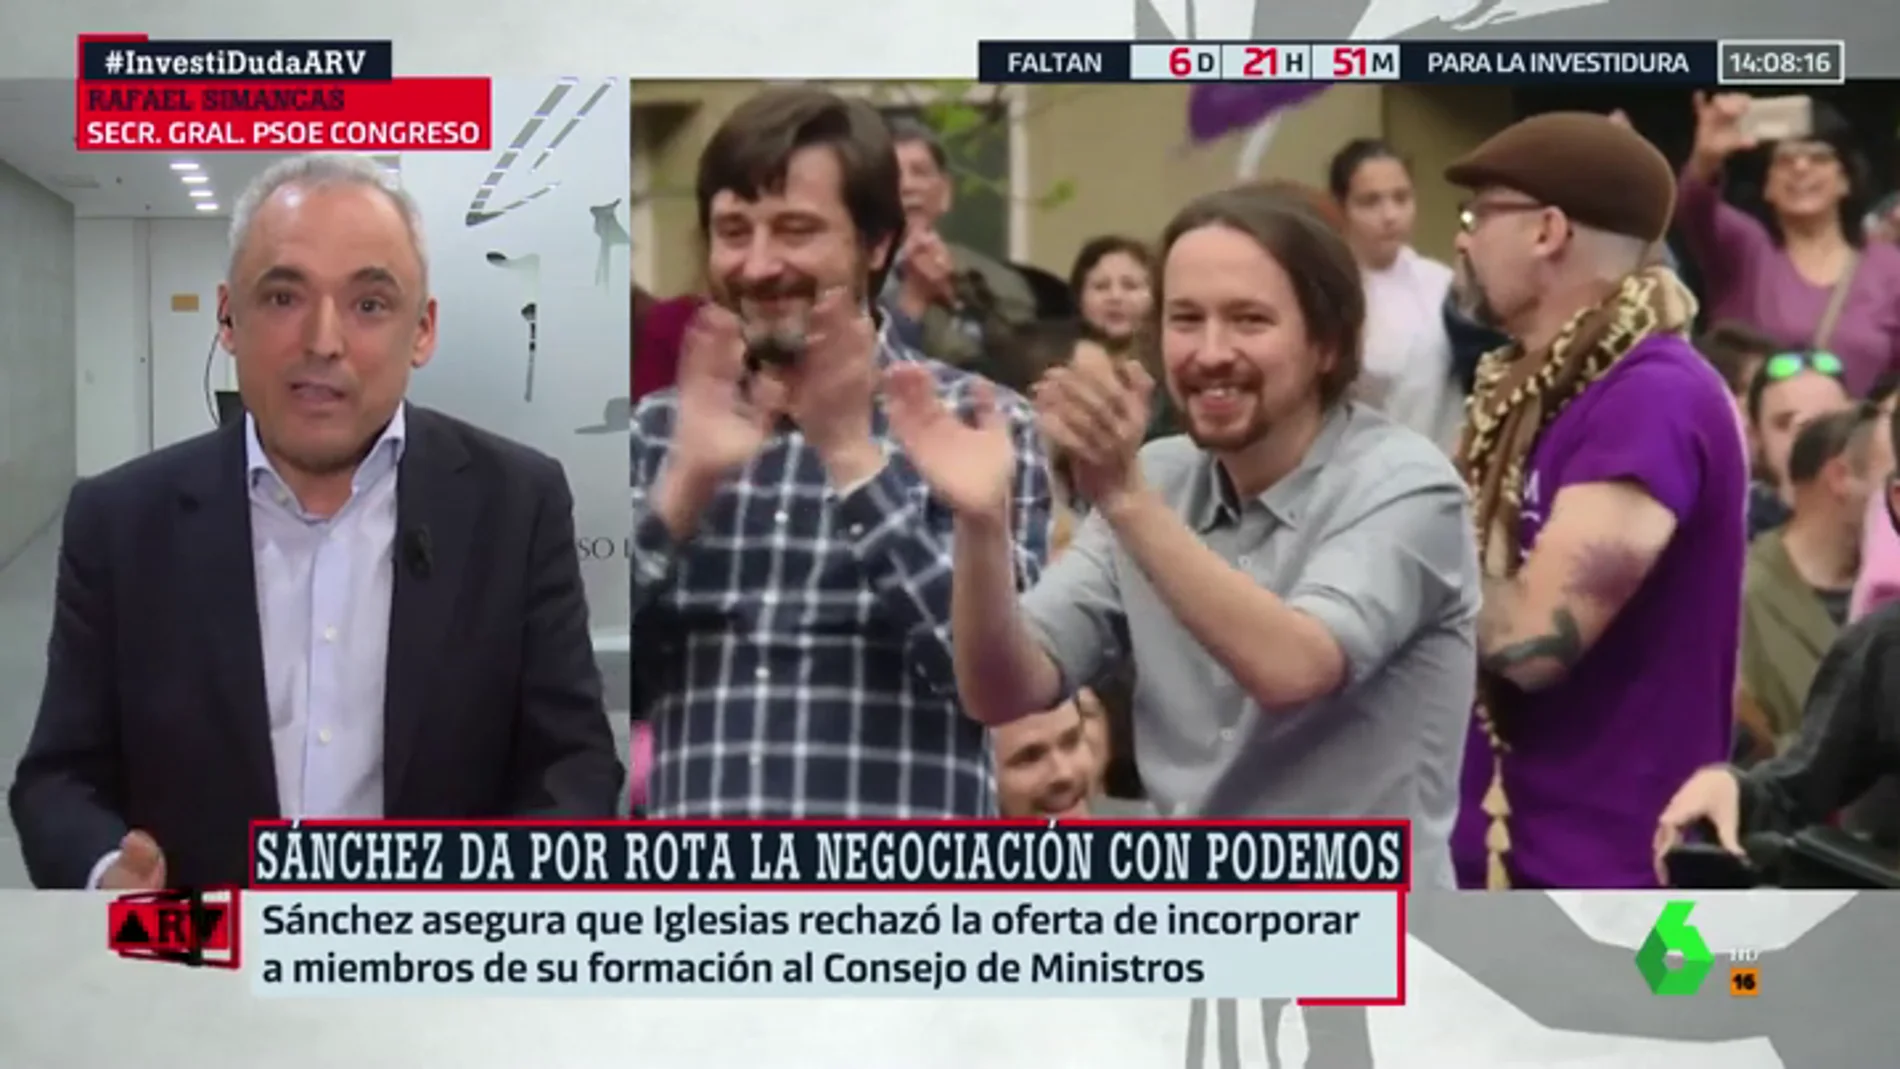 Rafael Simancas (PSOE): "Parece que Pablo Iglesias quiere votar 'no' con la ultraderecha a Pedro Sánchez"